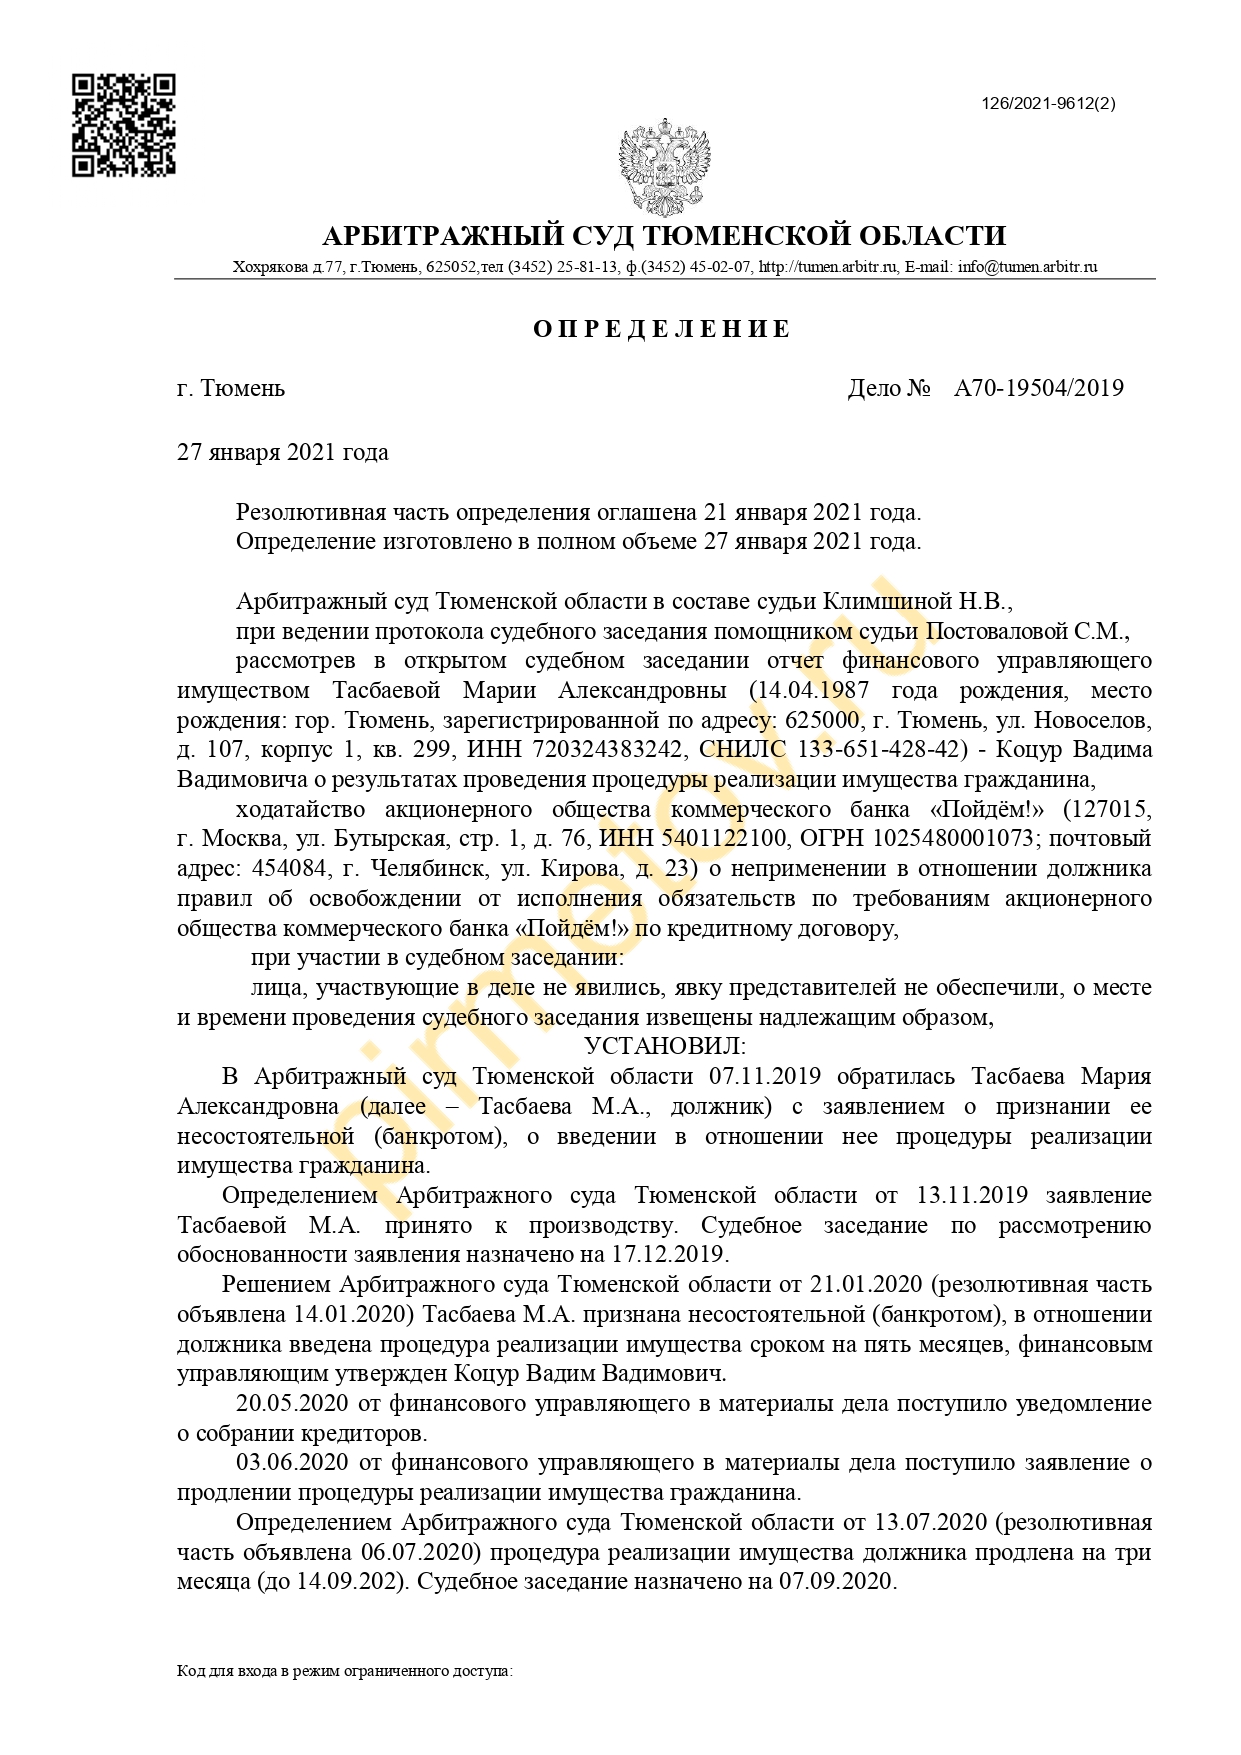 Определение суда Ямало-Ненецкого АО о признании ИП банкротом